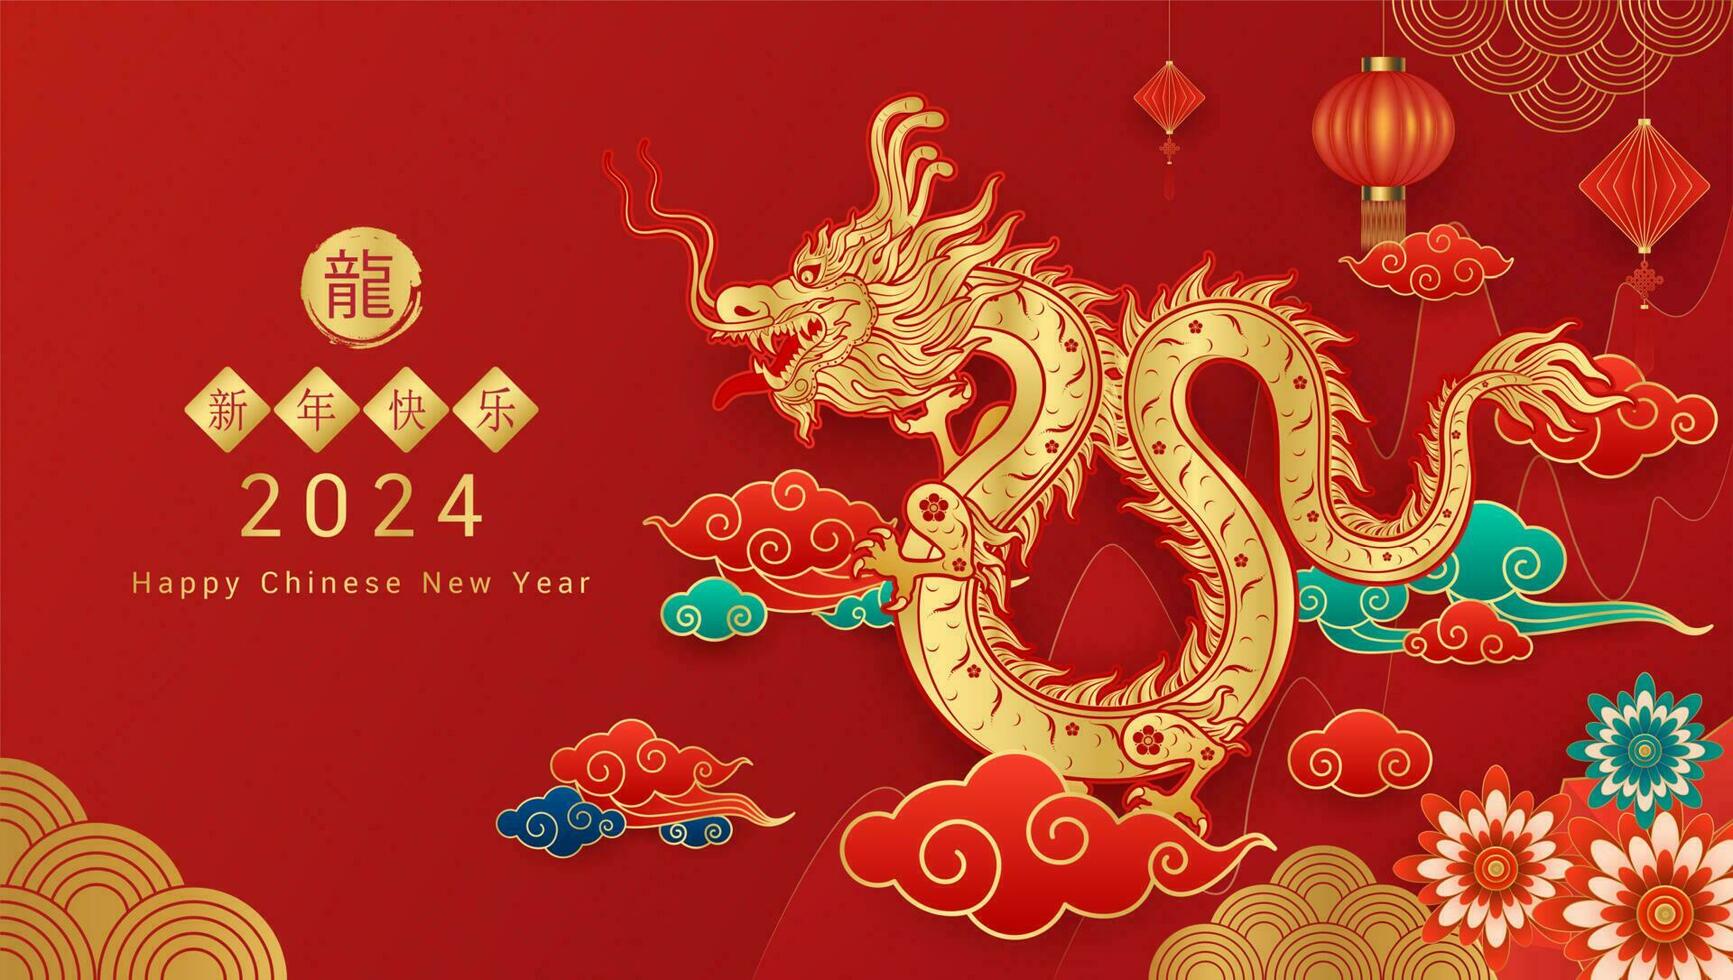 contento chino nuevo año 2024. chino continuar oro zodíaco firmar en rojo antecedentes para tarjeta diseño. China lunar calendario animal. Traducción contento nuevo año 2024, año de el continuar. vector eps10.